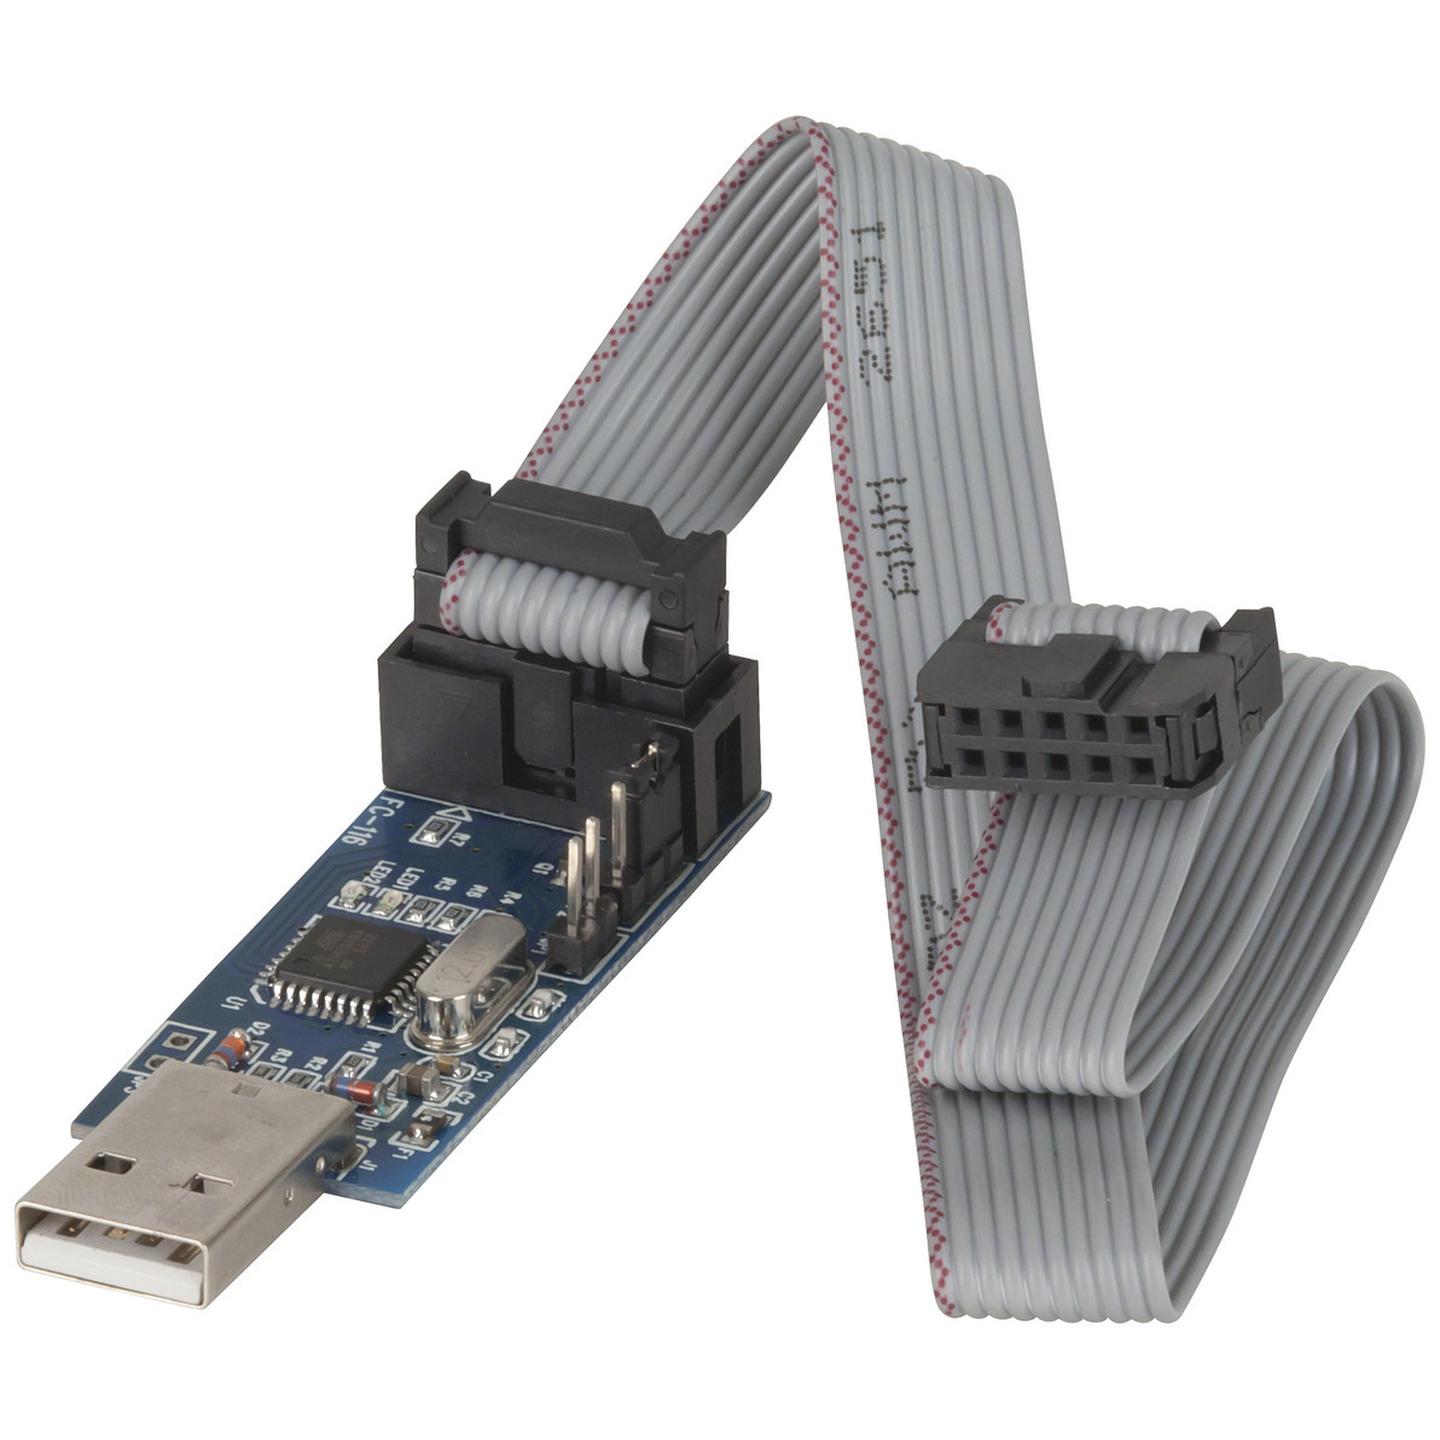 Duinotech ISP Programmer for Arduino and AVR